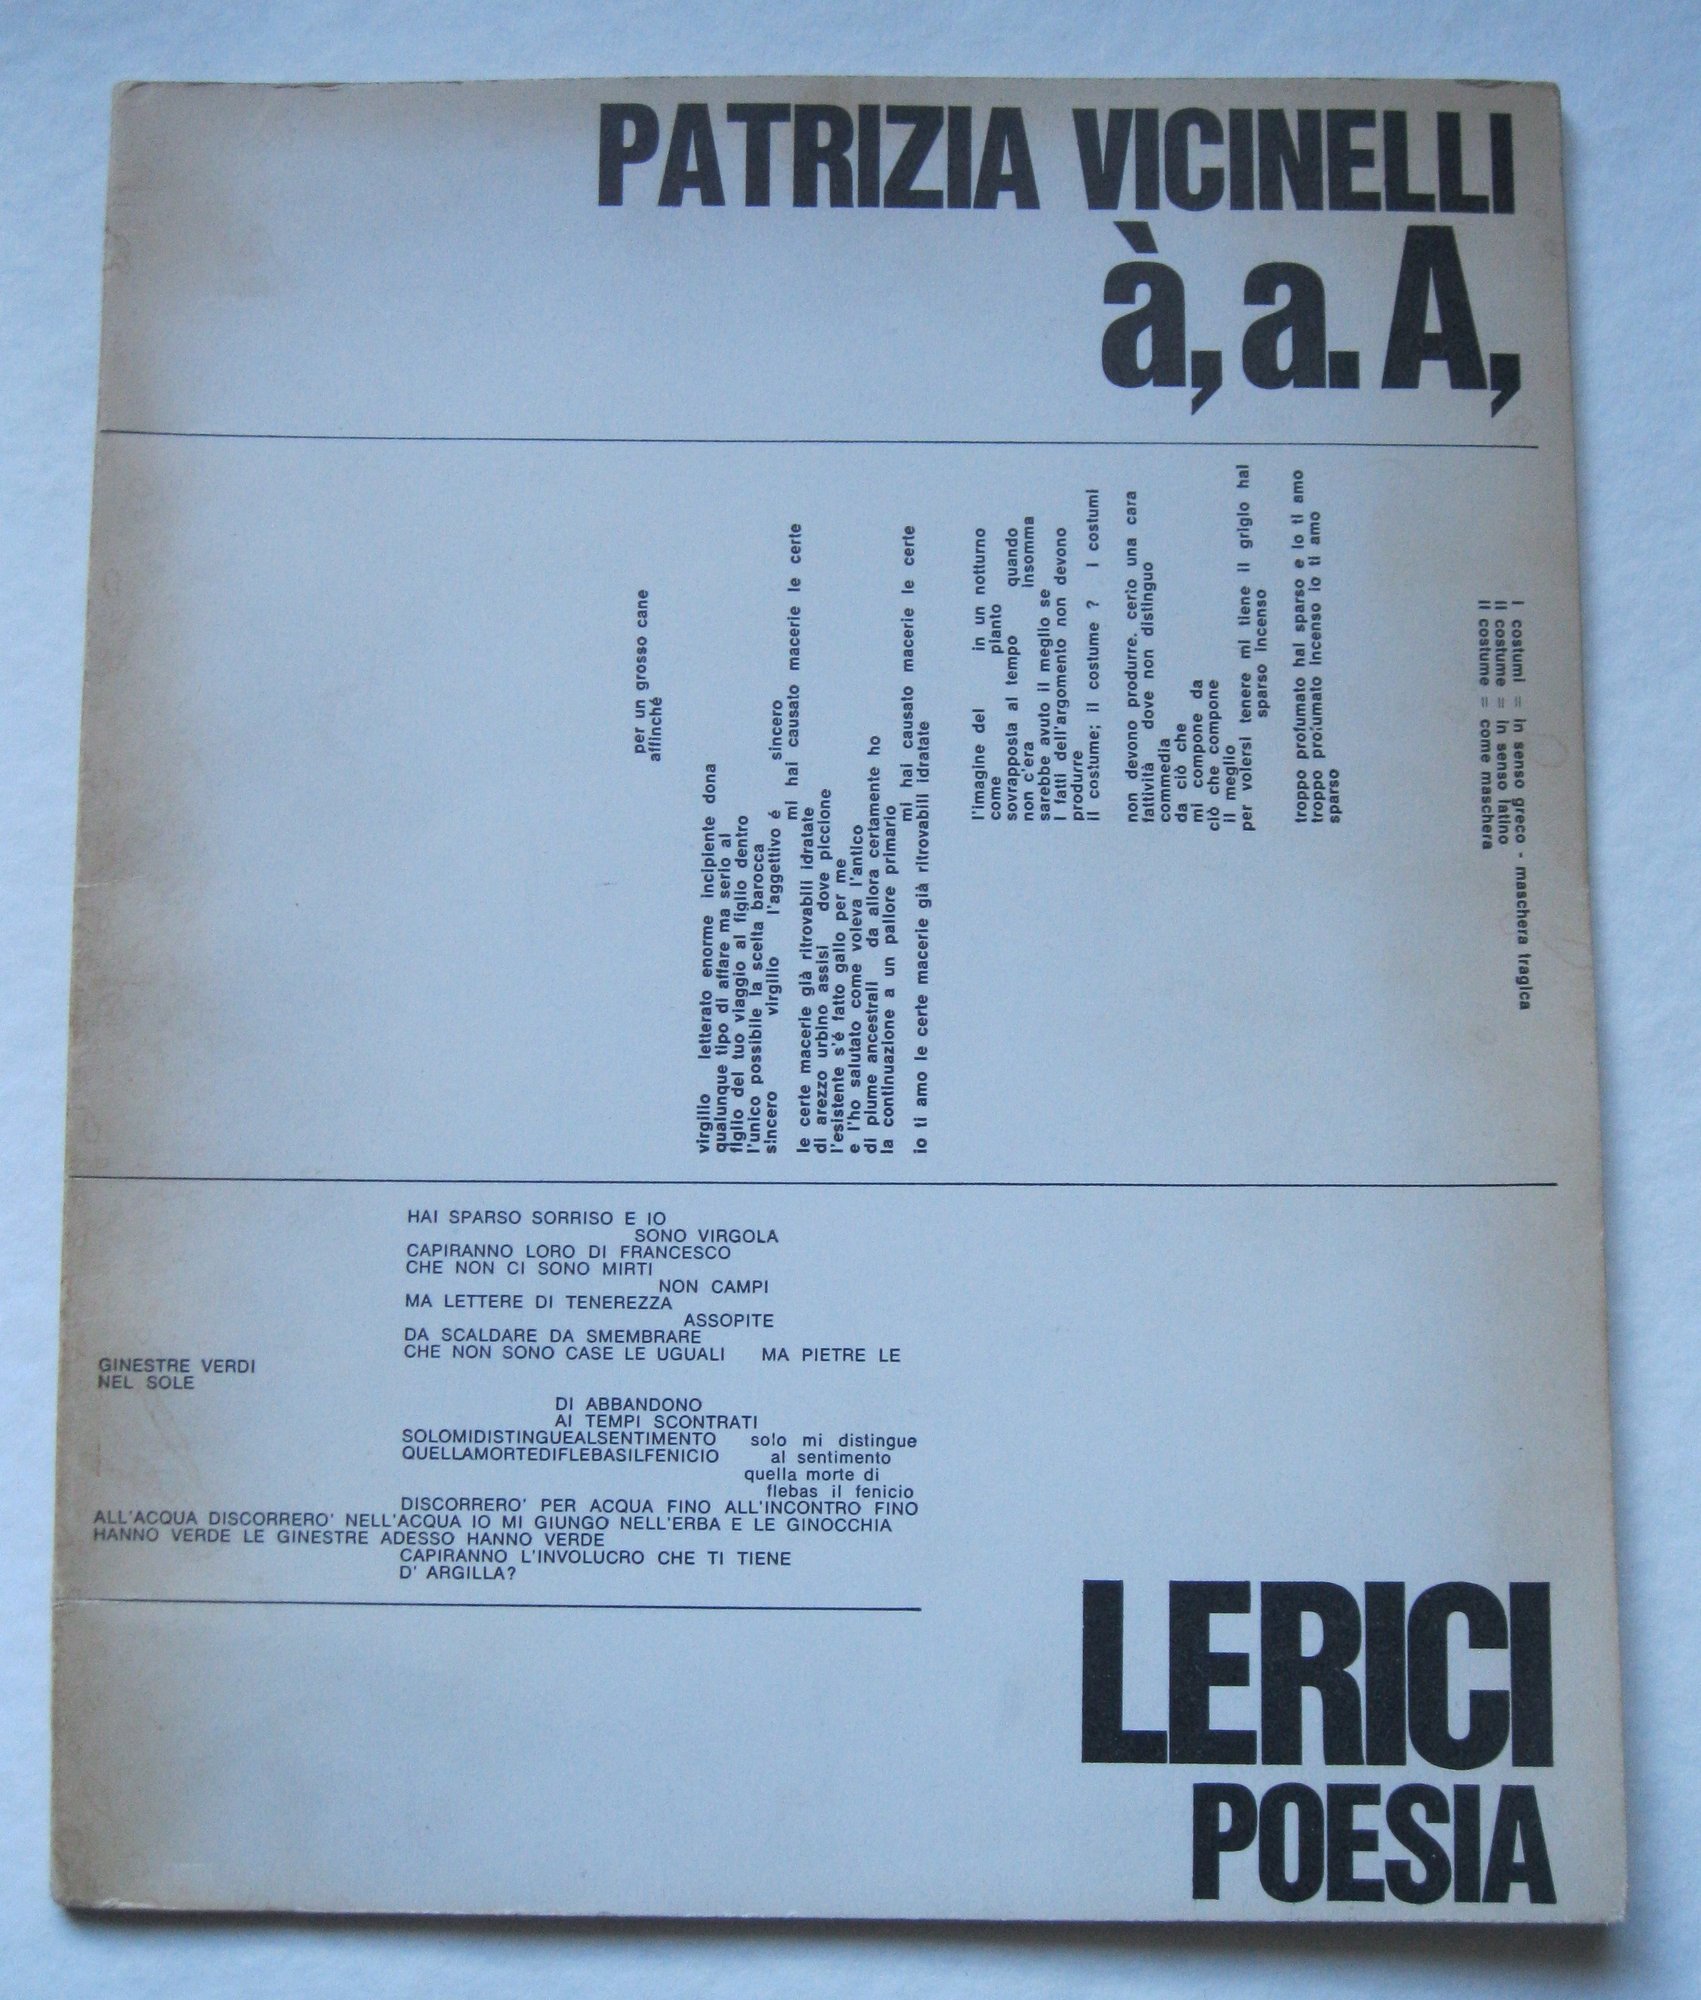 à,a.A, di Patrizia Vicinelli (La Spezia, Lerici, 1967): introvabile primo esempio di poesia visiva della grande poetessa